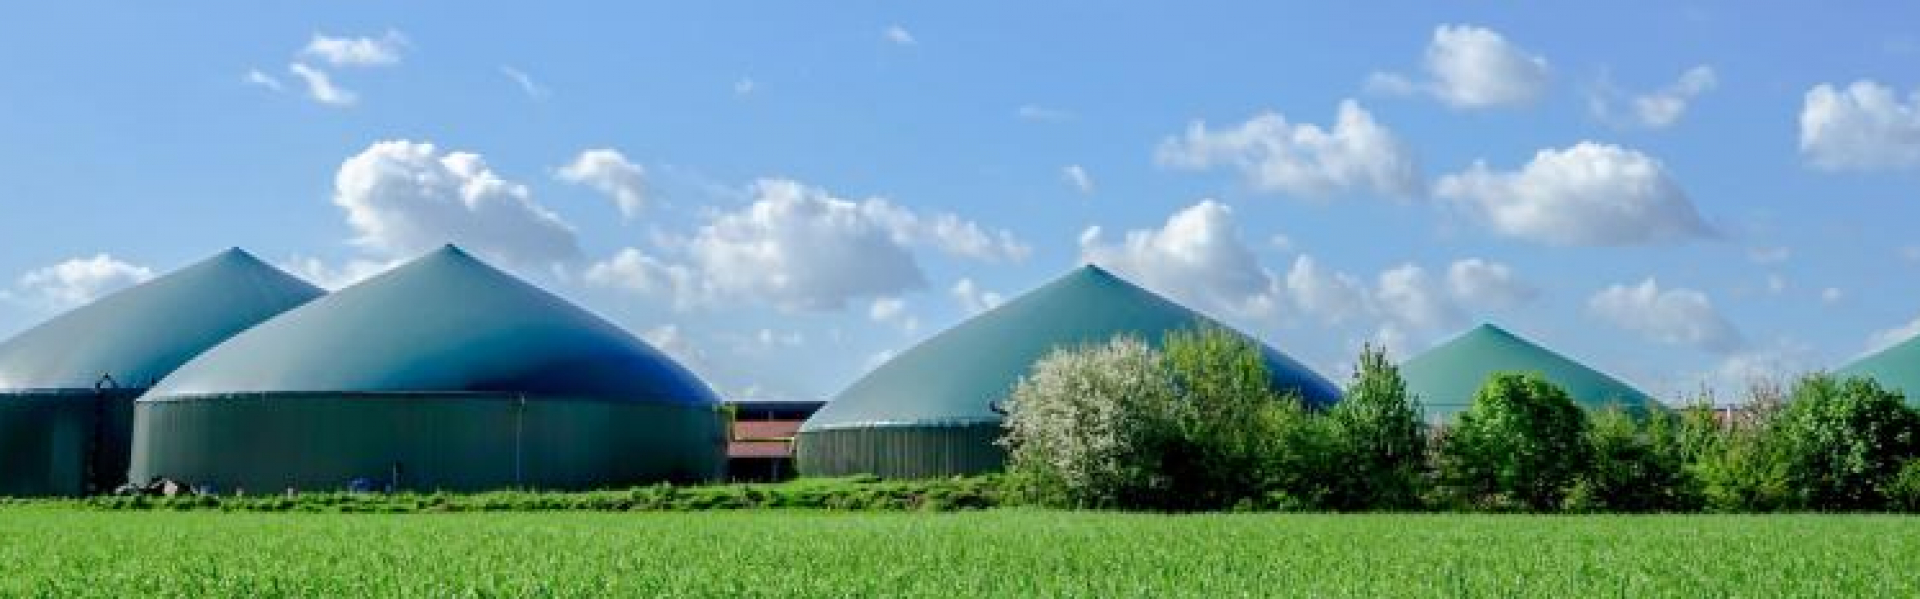 banner biogas